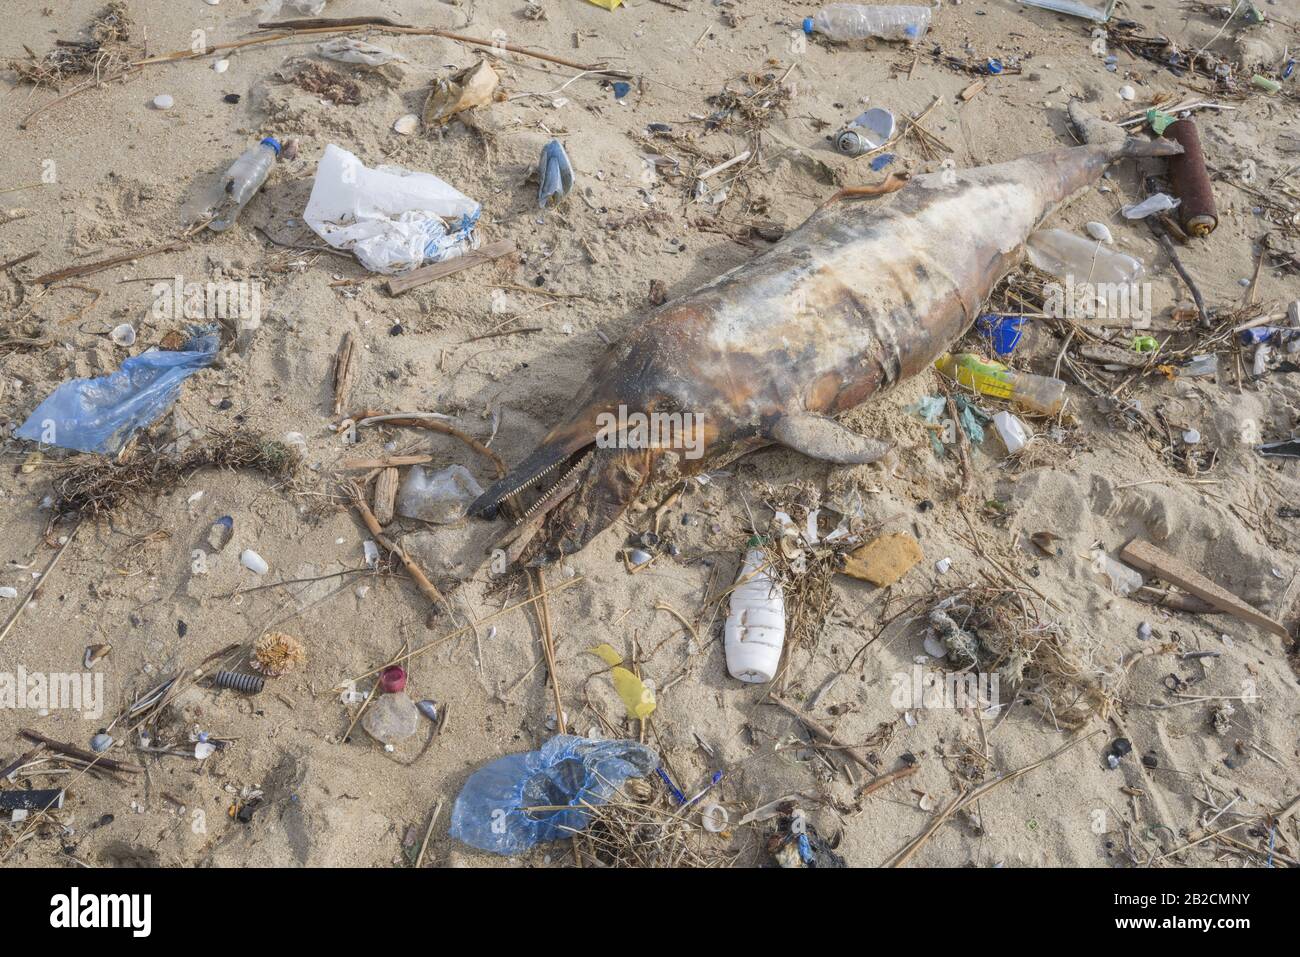 Delphin, der von den Wellen geworfen wird, liegt am Strand und ist von Plastikmüll umgeben. Flaschen, Beutel und andere Kunststoffschutt in der Nähe von ist ein totes Delphin am Strand. Plastische Verschmutzung tötet Meerestiere Stockfoto